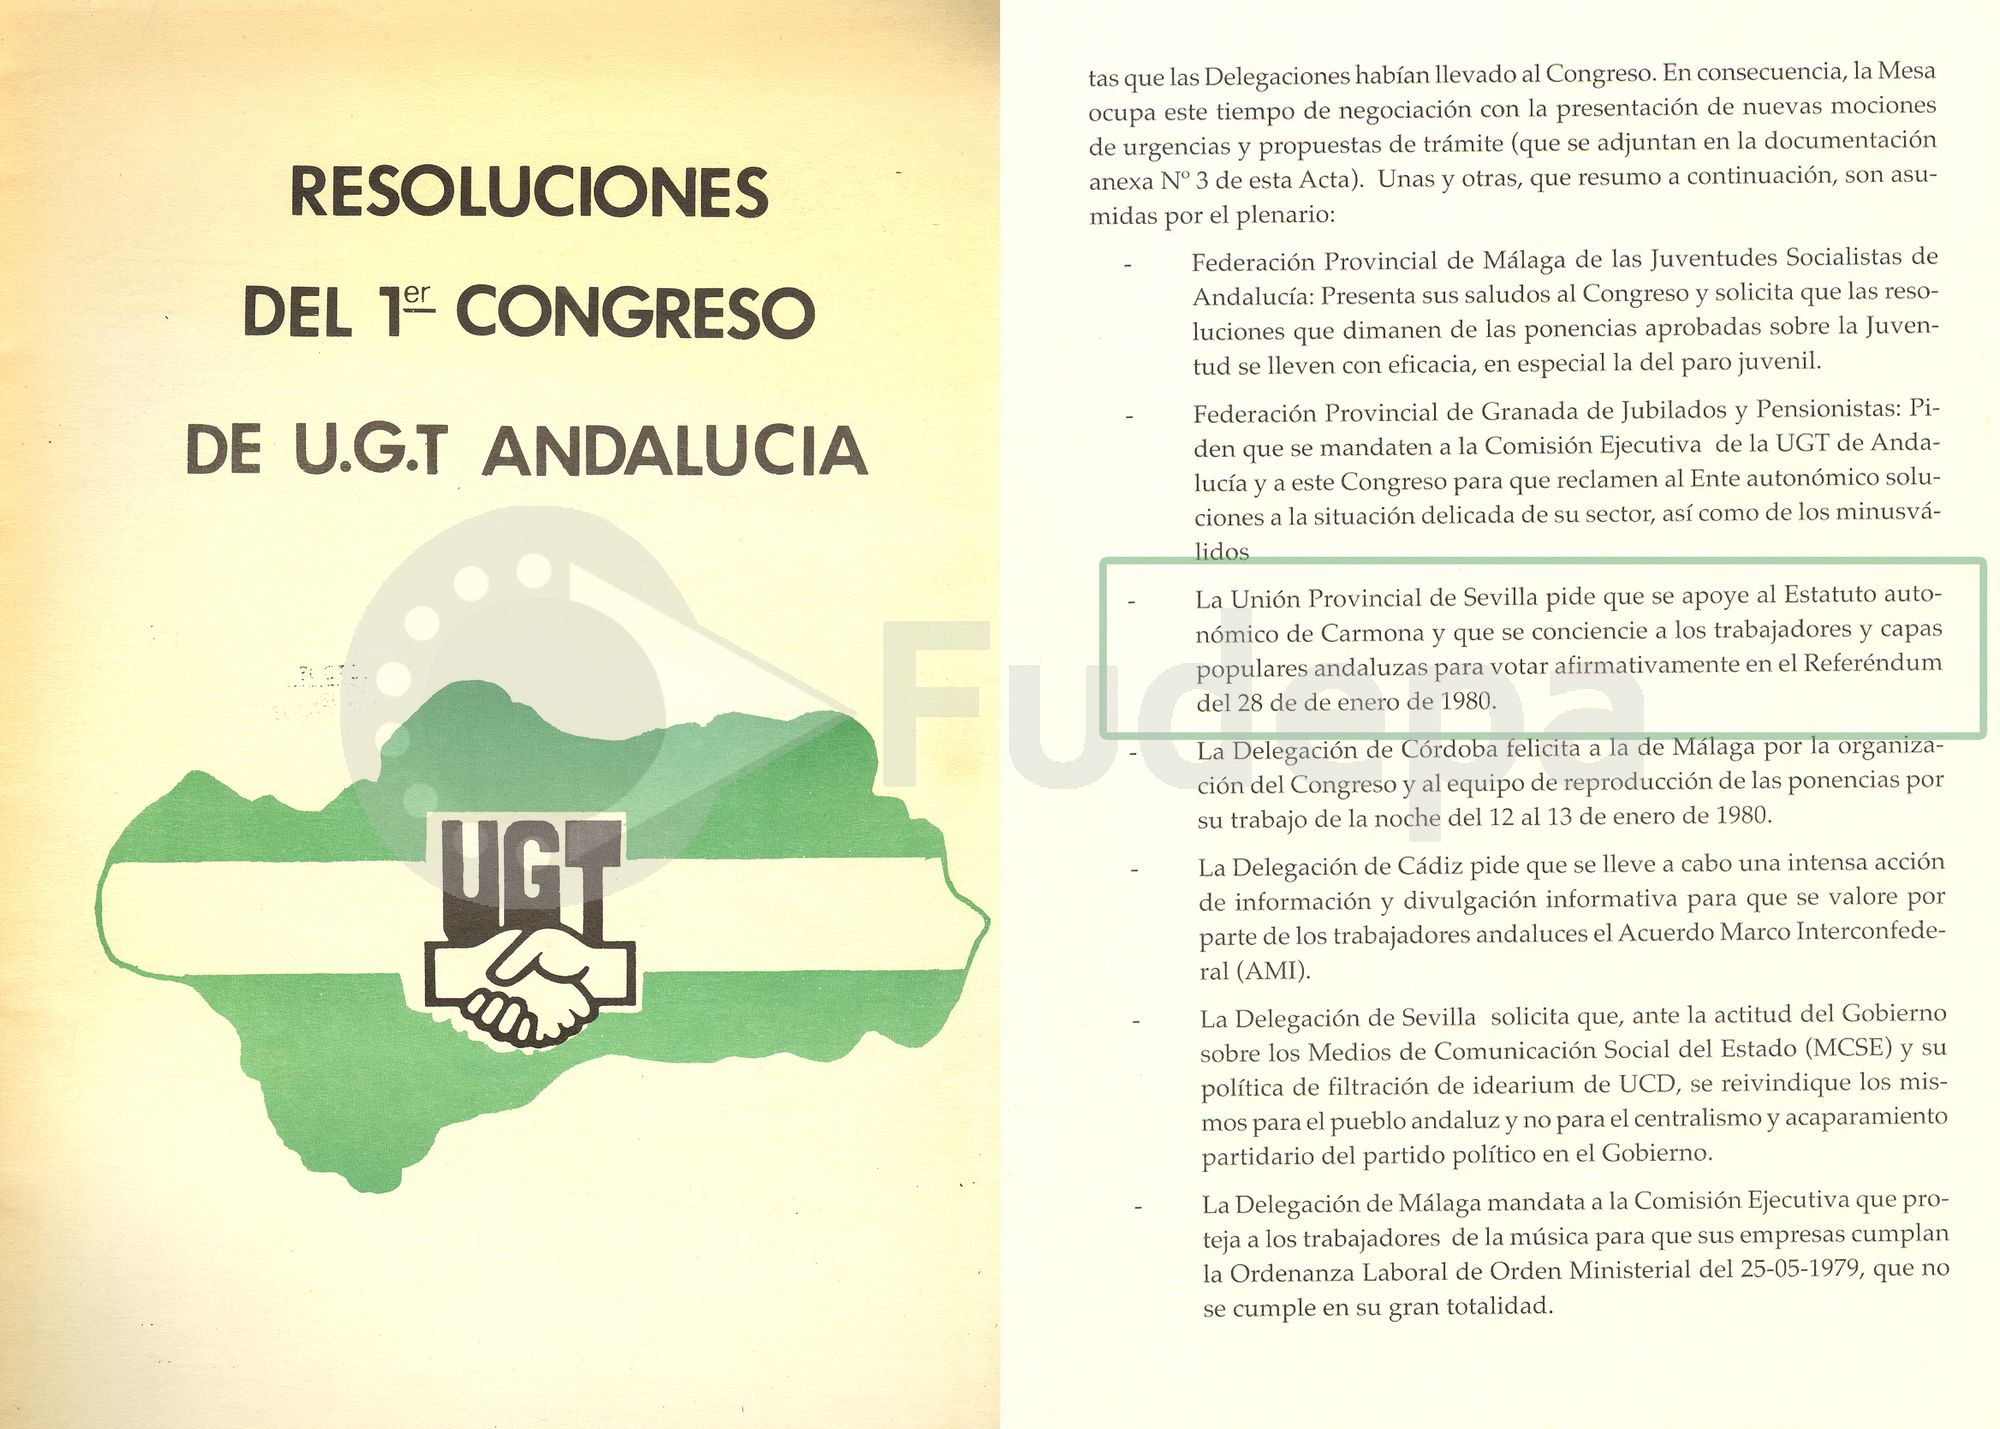 UGT Andalucía apoya el sí en el referéndum y aprueba que la Comisión Ejecutiva Regional promueva el voto entre los trabajadores.
(FUDEPA_AHUGTA)